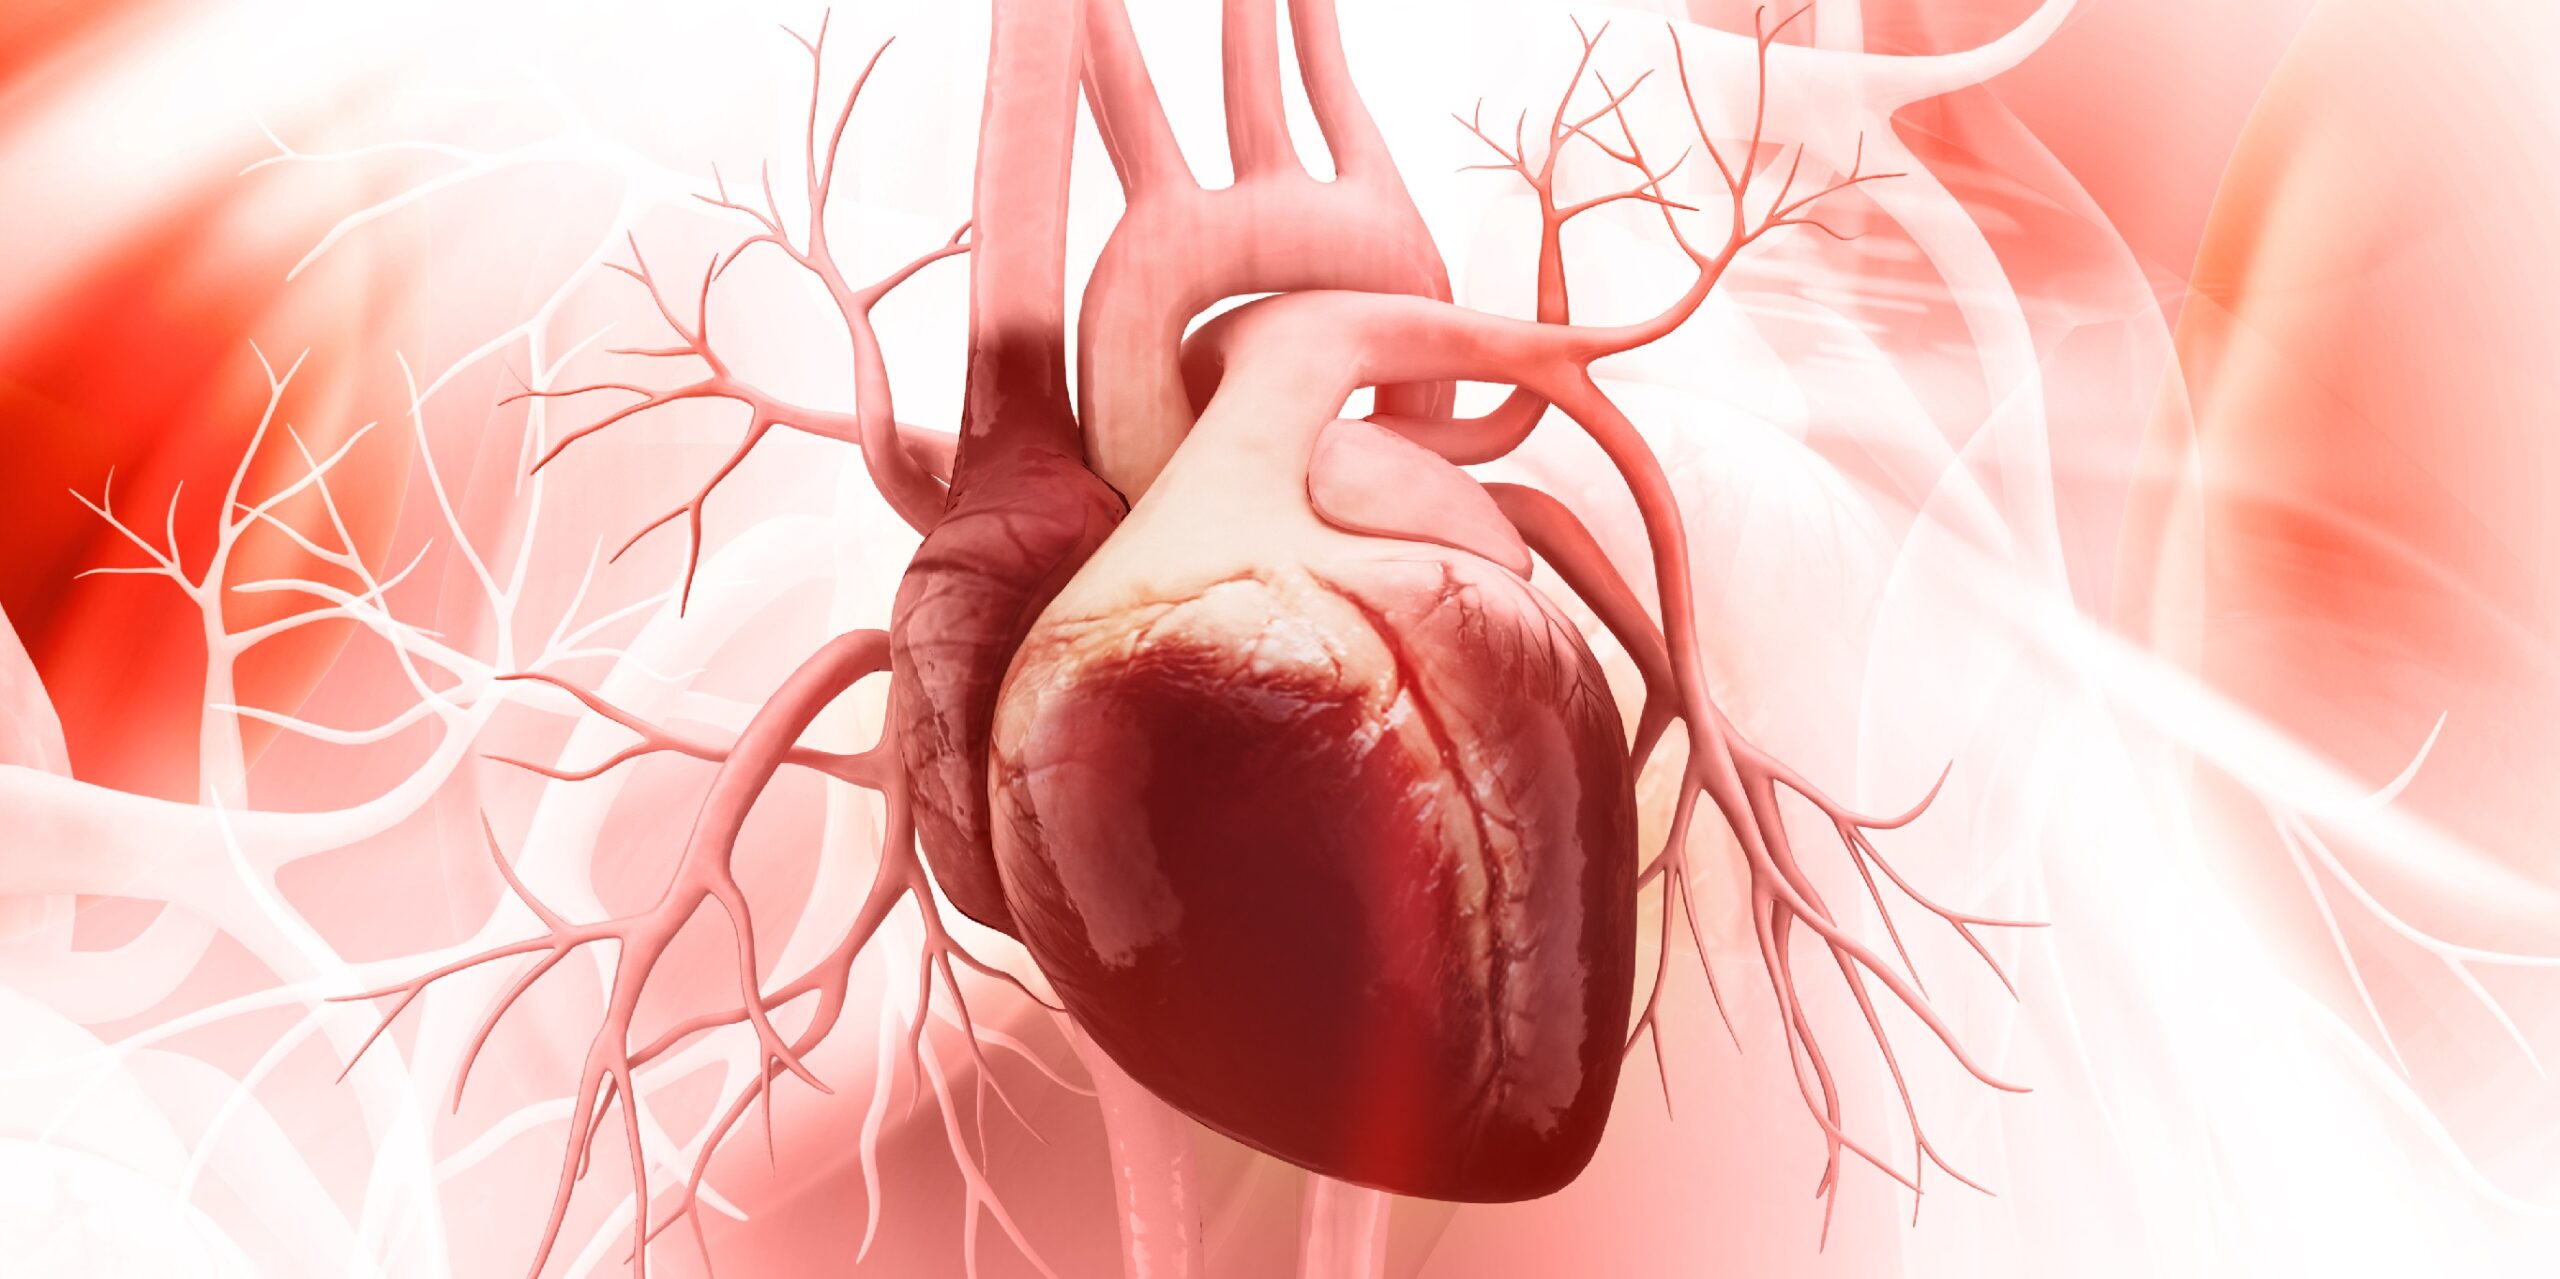 Por qué el corazón envejece prematuramente – Nuevo mecanismo de envejecimiento revelado – Práctica curativa